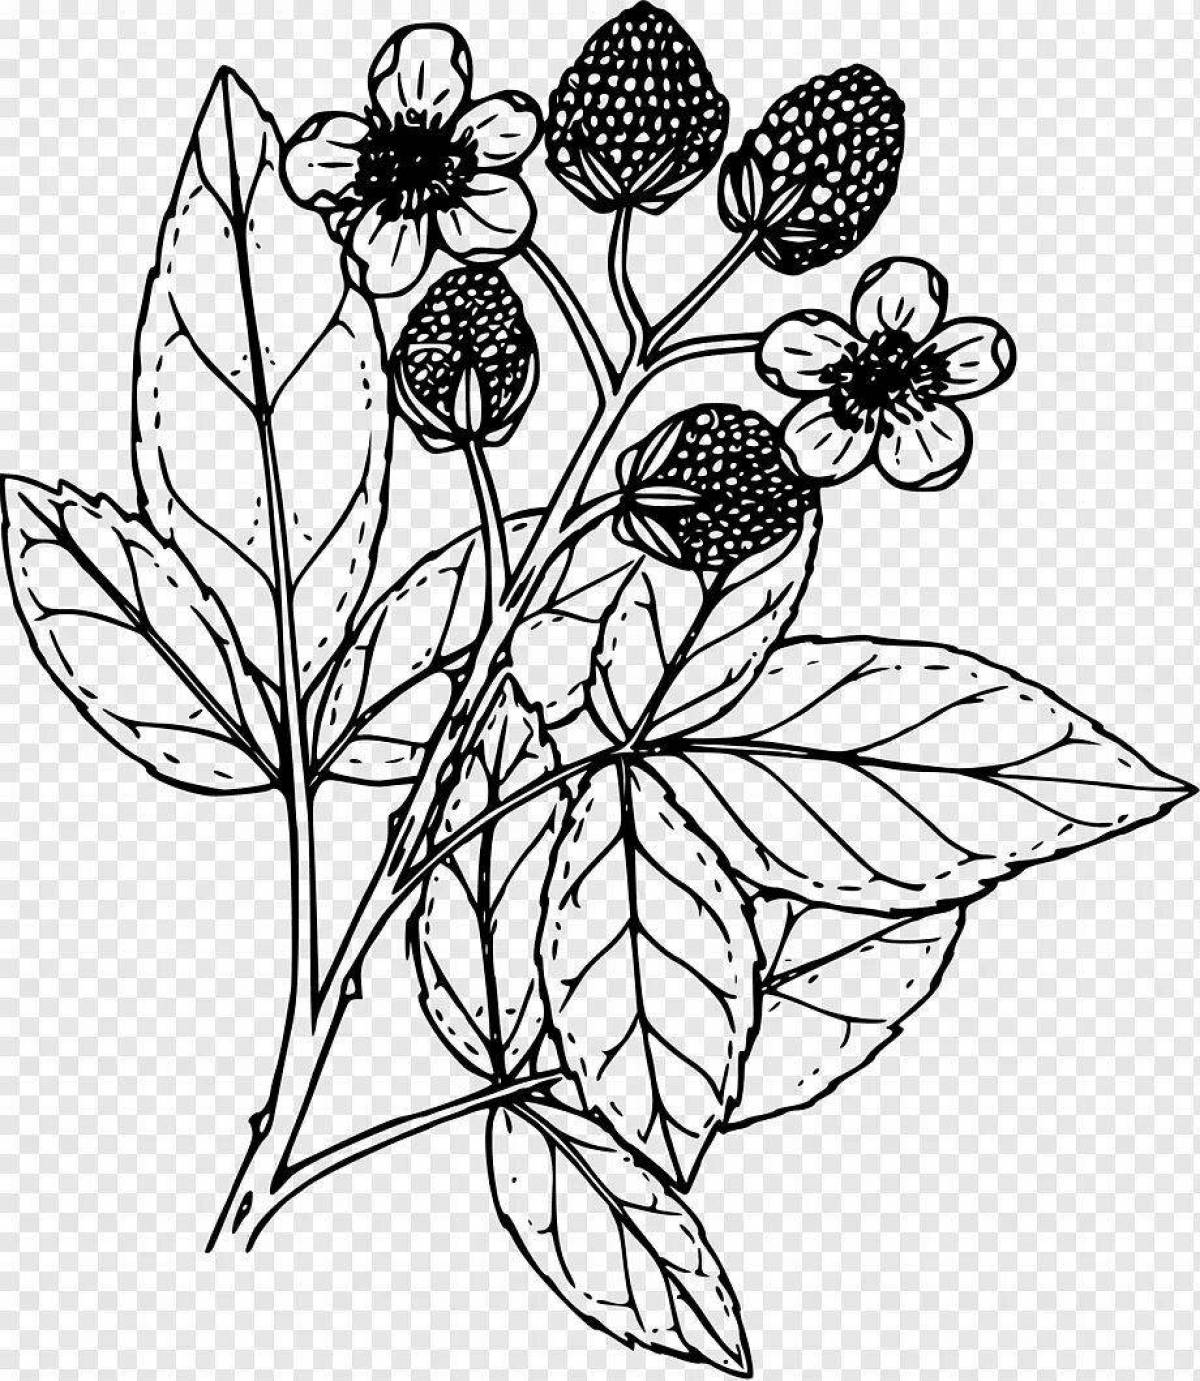 Blackberries for kids #4